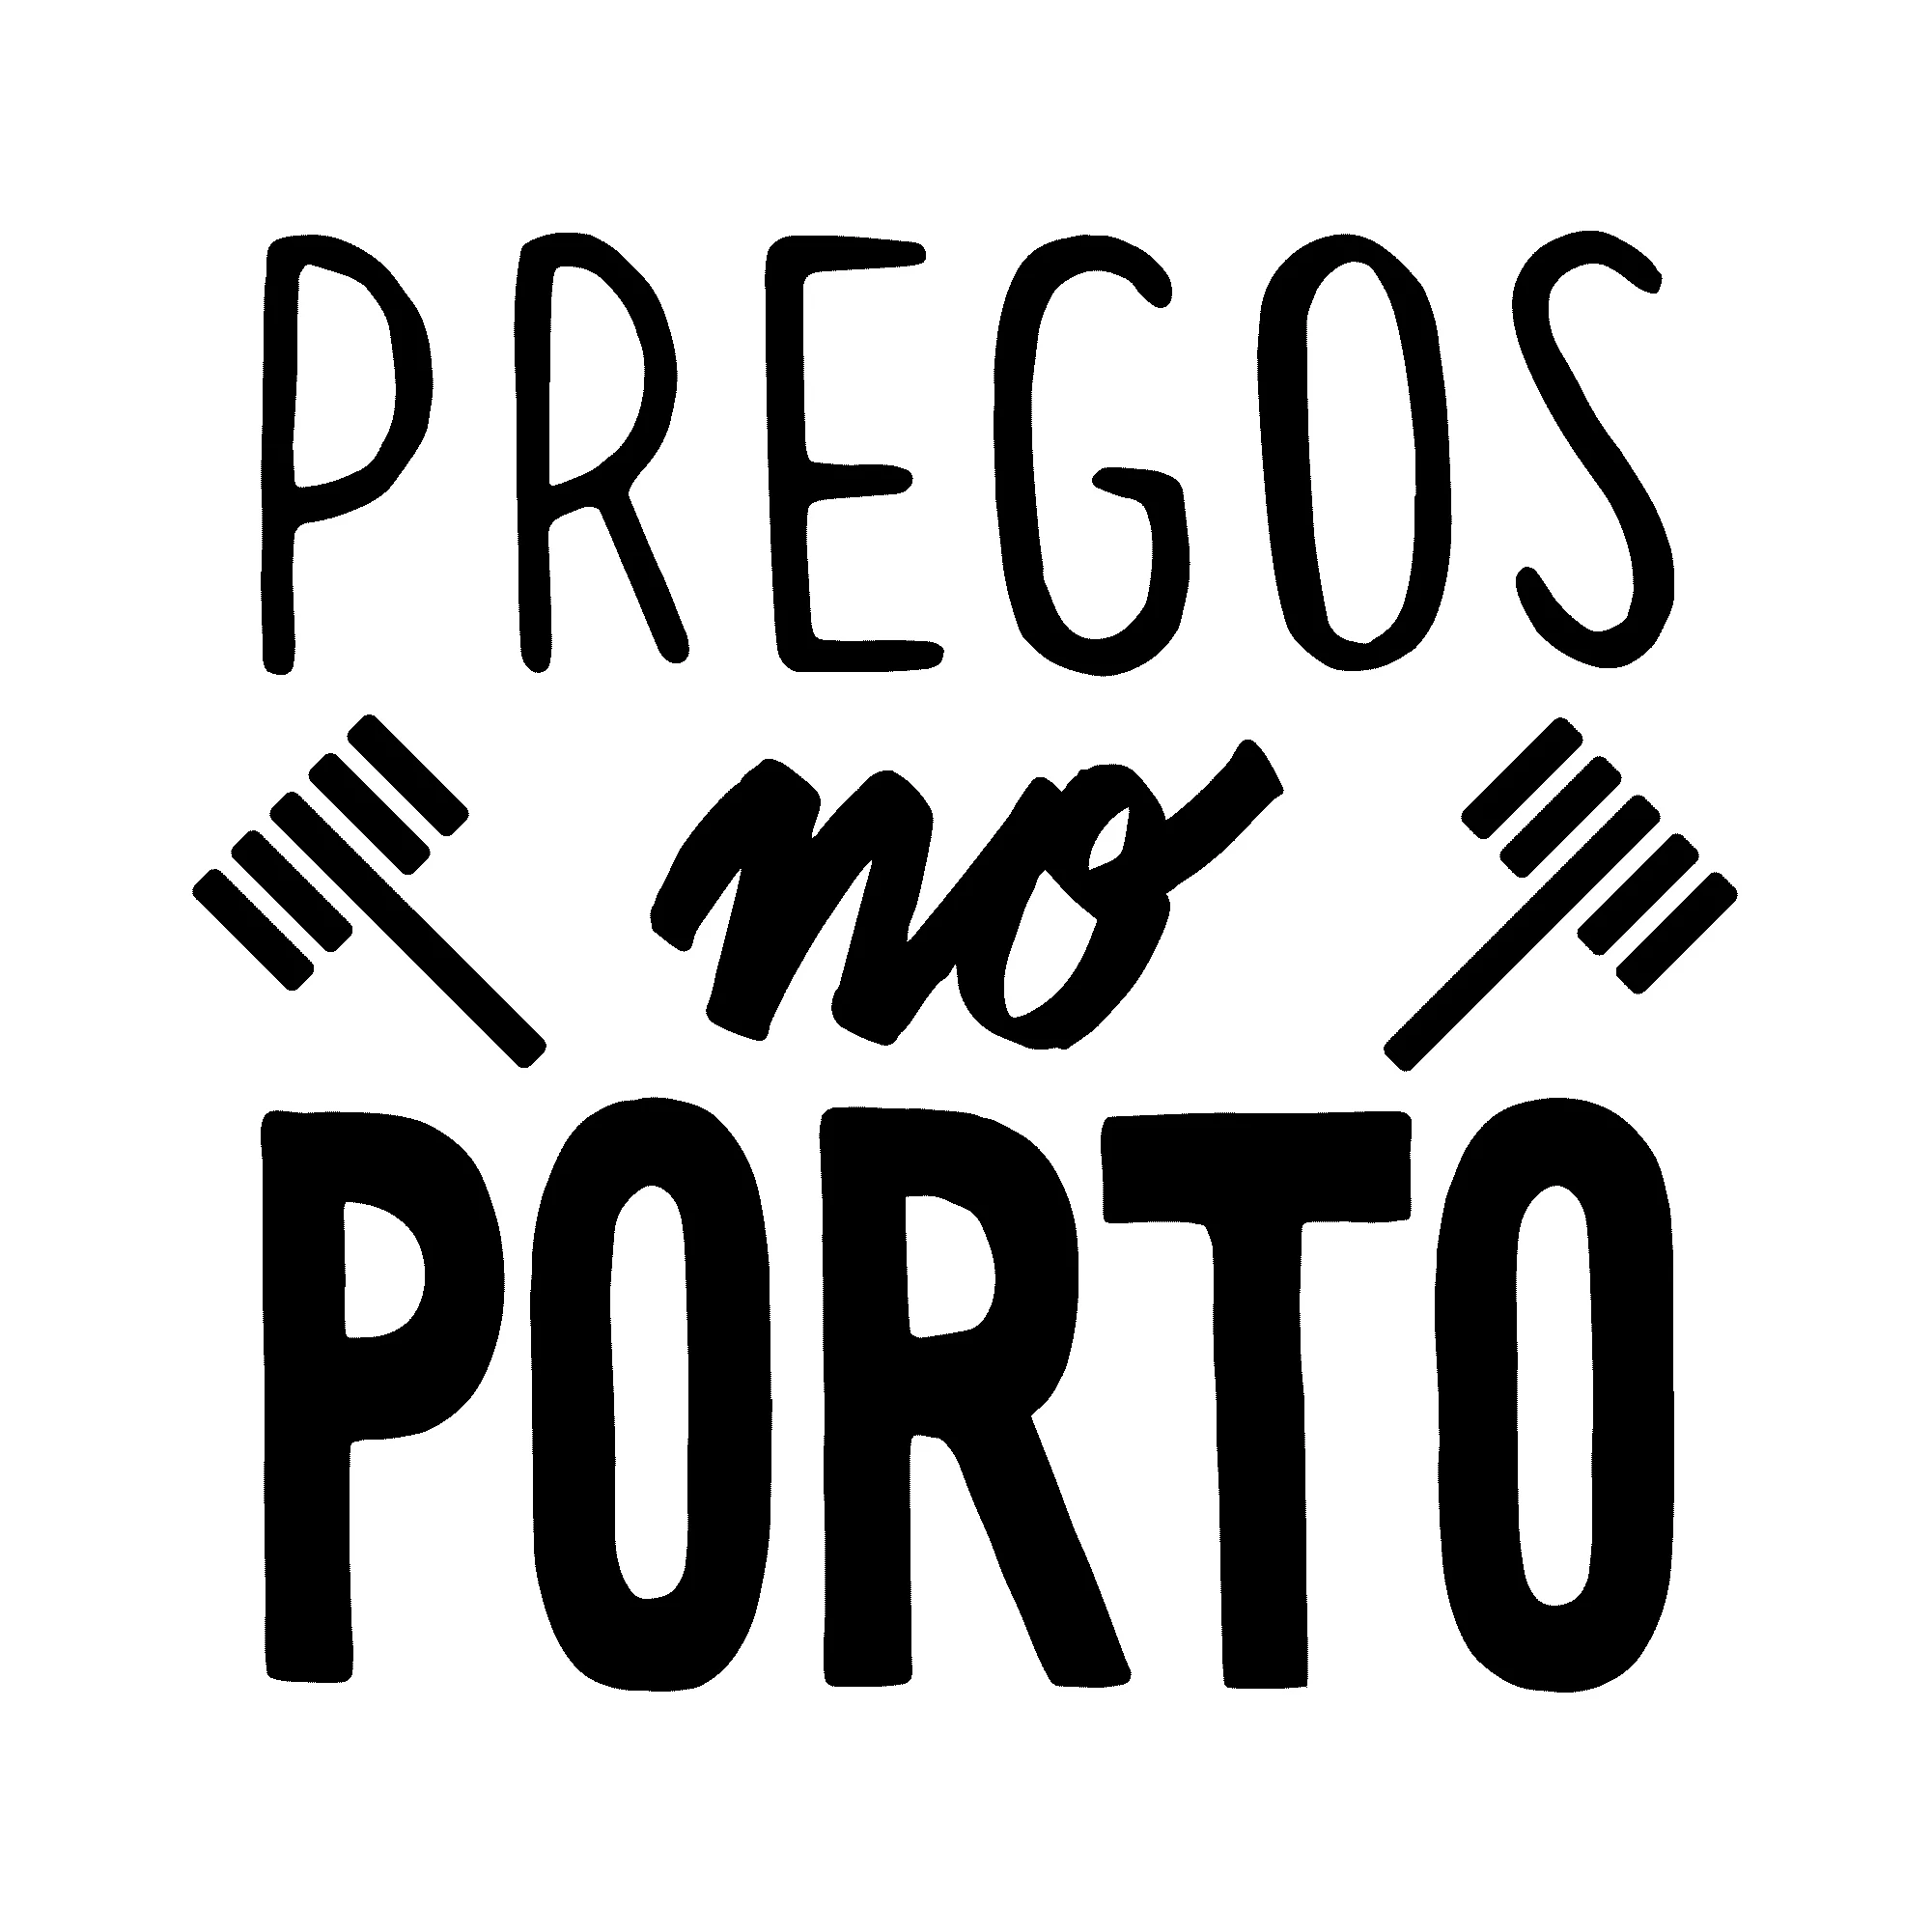 PREGOS NO PORTO - lettering (2015)